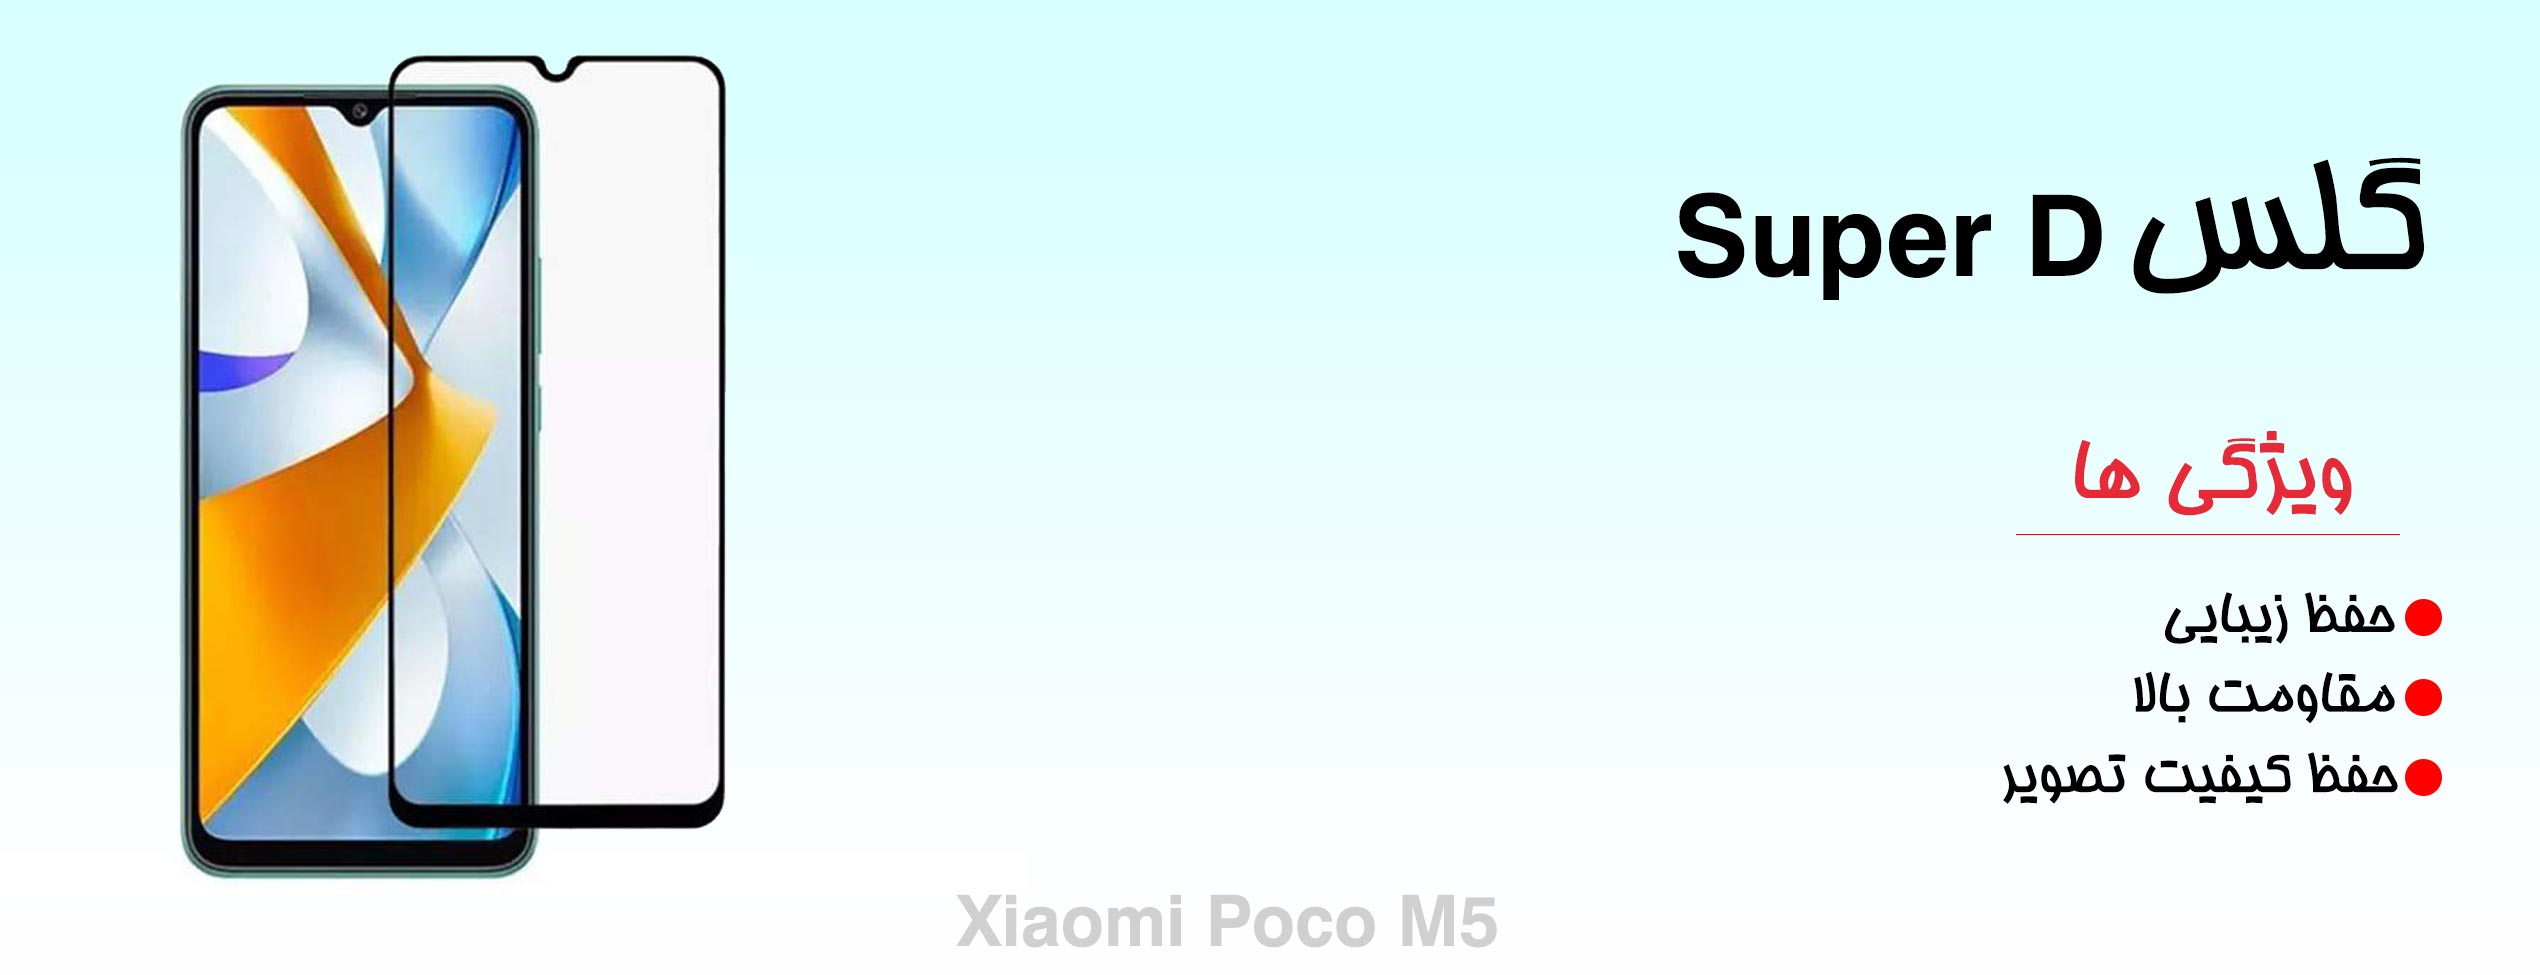 گلس Super D گوشی شیائومی Xiaomi Poco M5